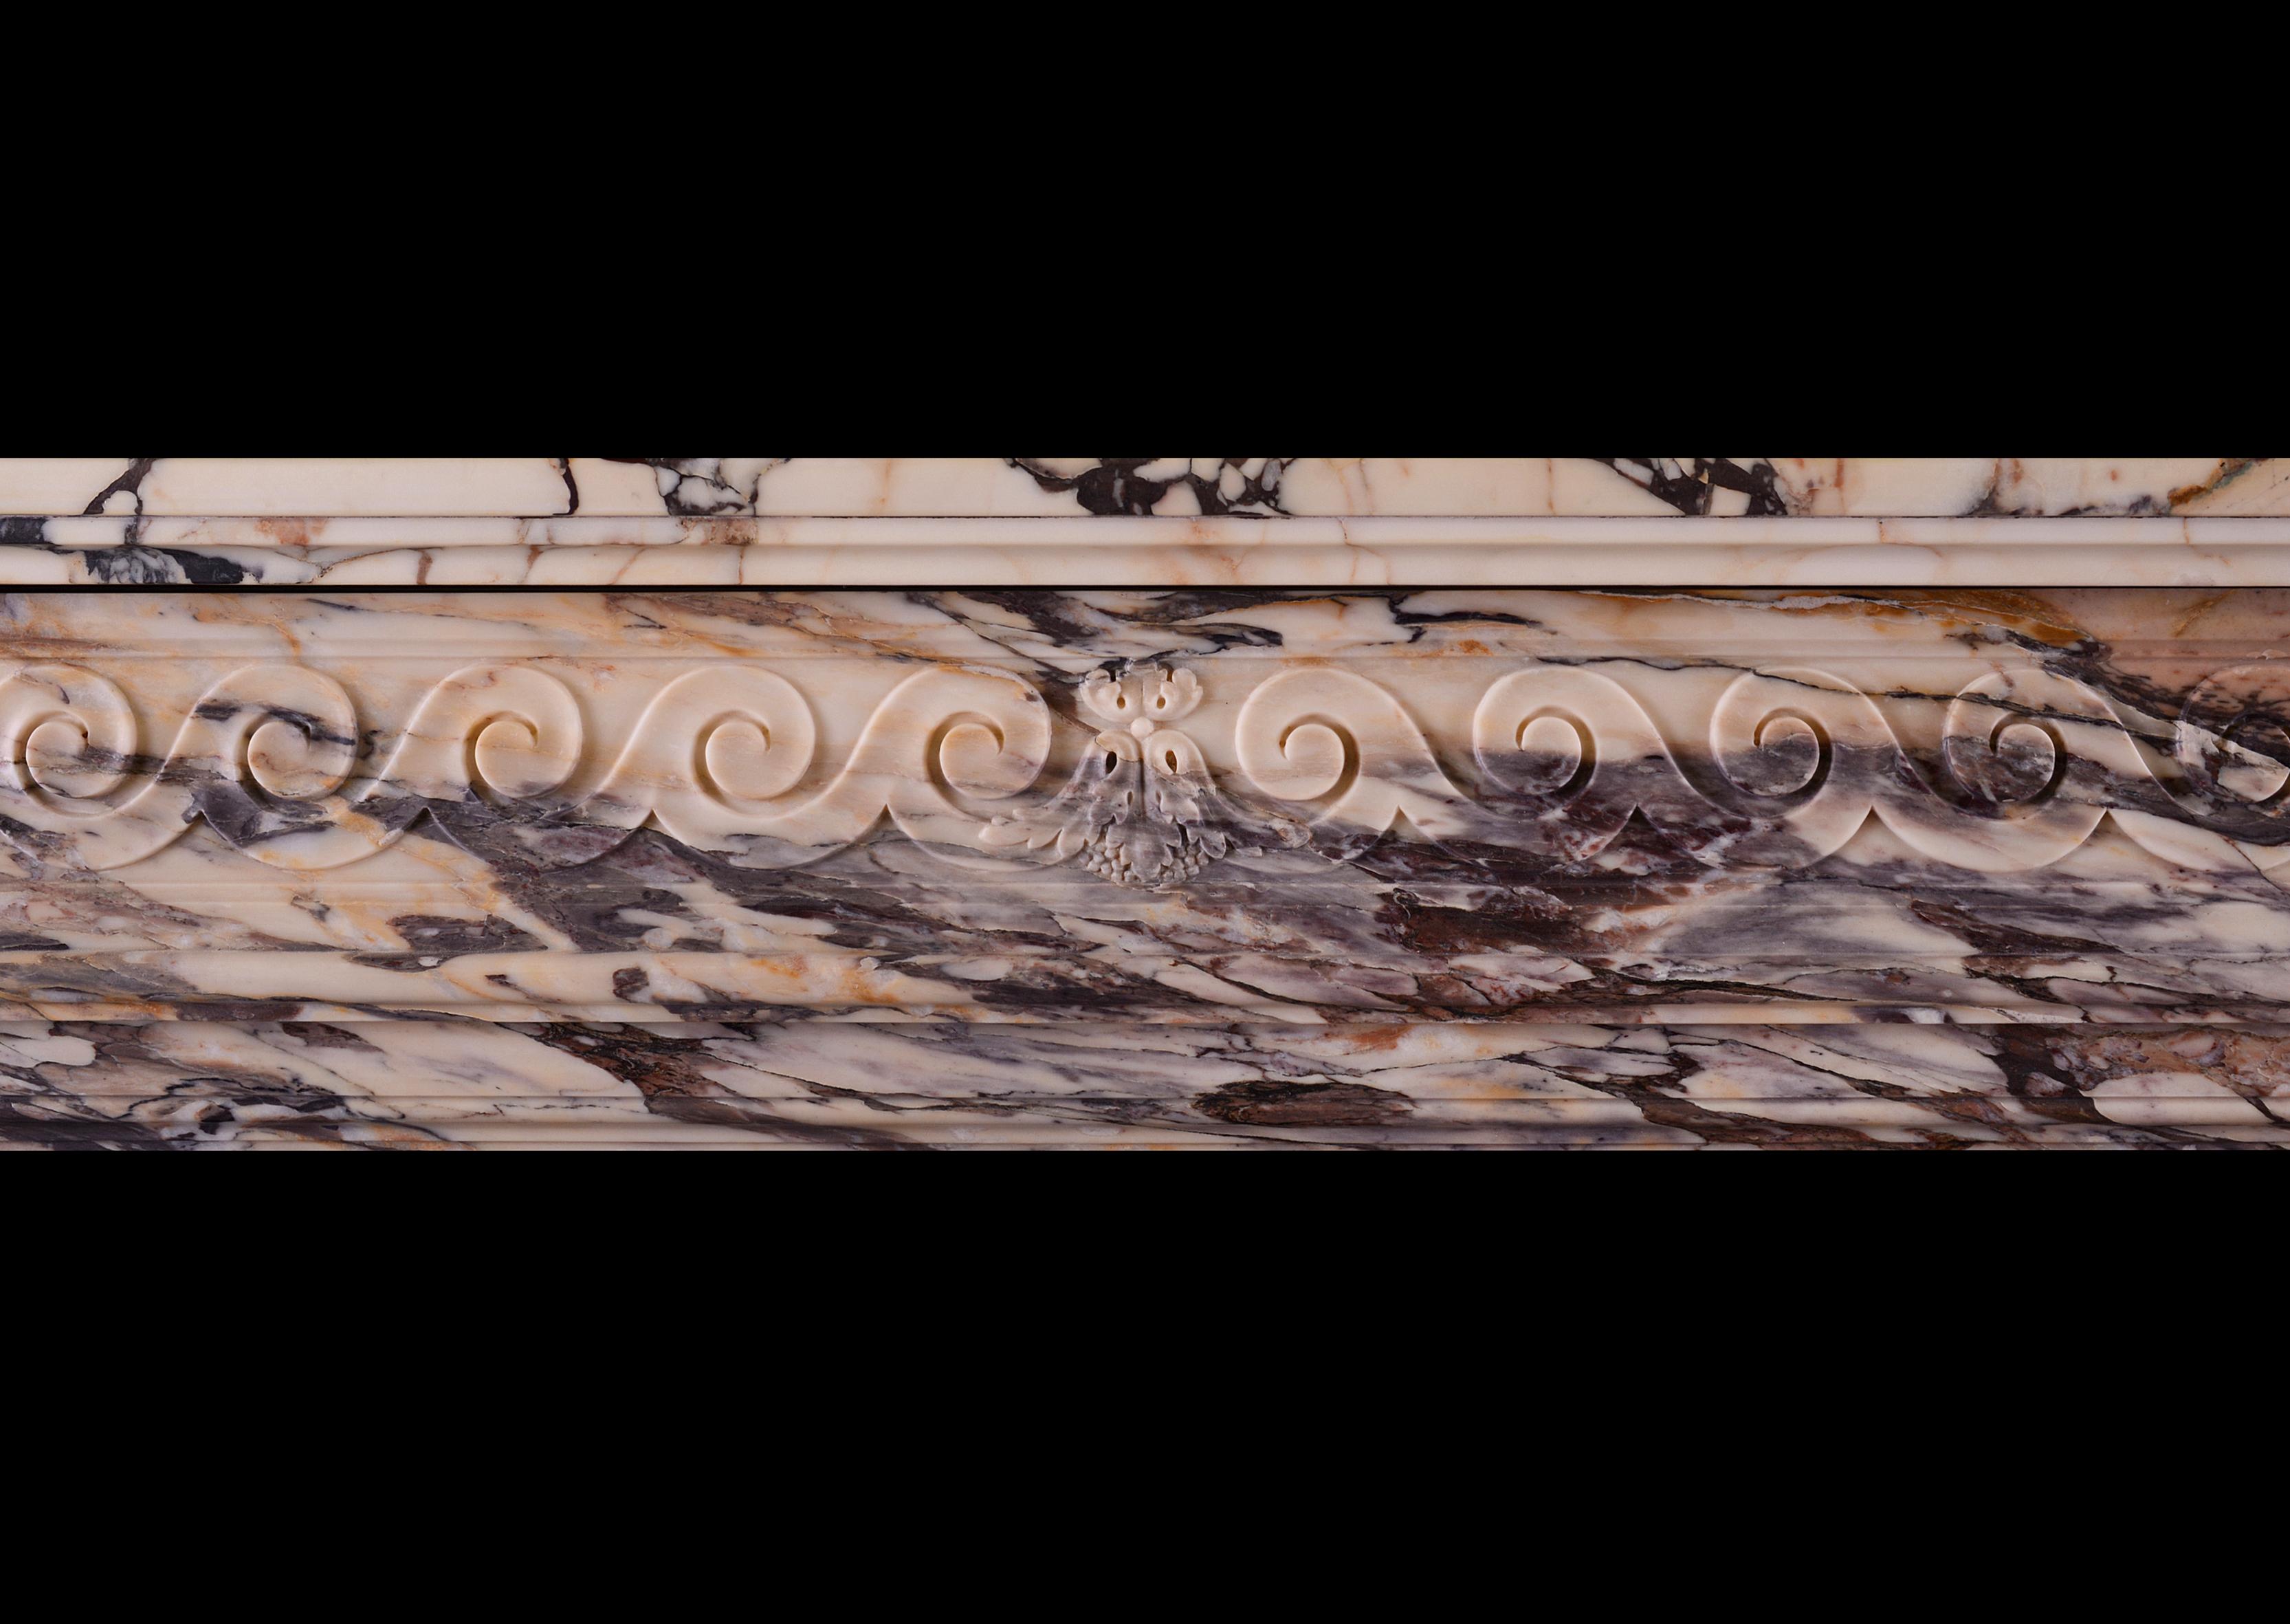 Très belle cheminée Louis XVI en marbre Brèche Violette. La frise sculptée est ornée de rinceaux en forme de c, avec une campanule sculptée au centre. Les jambages à cannelures incrustées de coques sculptées sont surmontés d'une console à volutes et